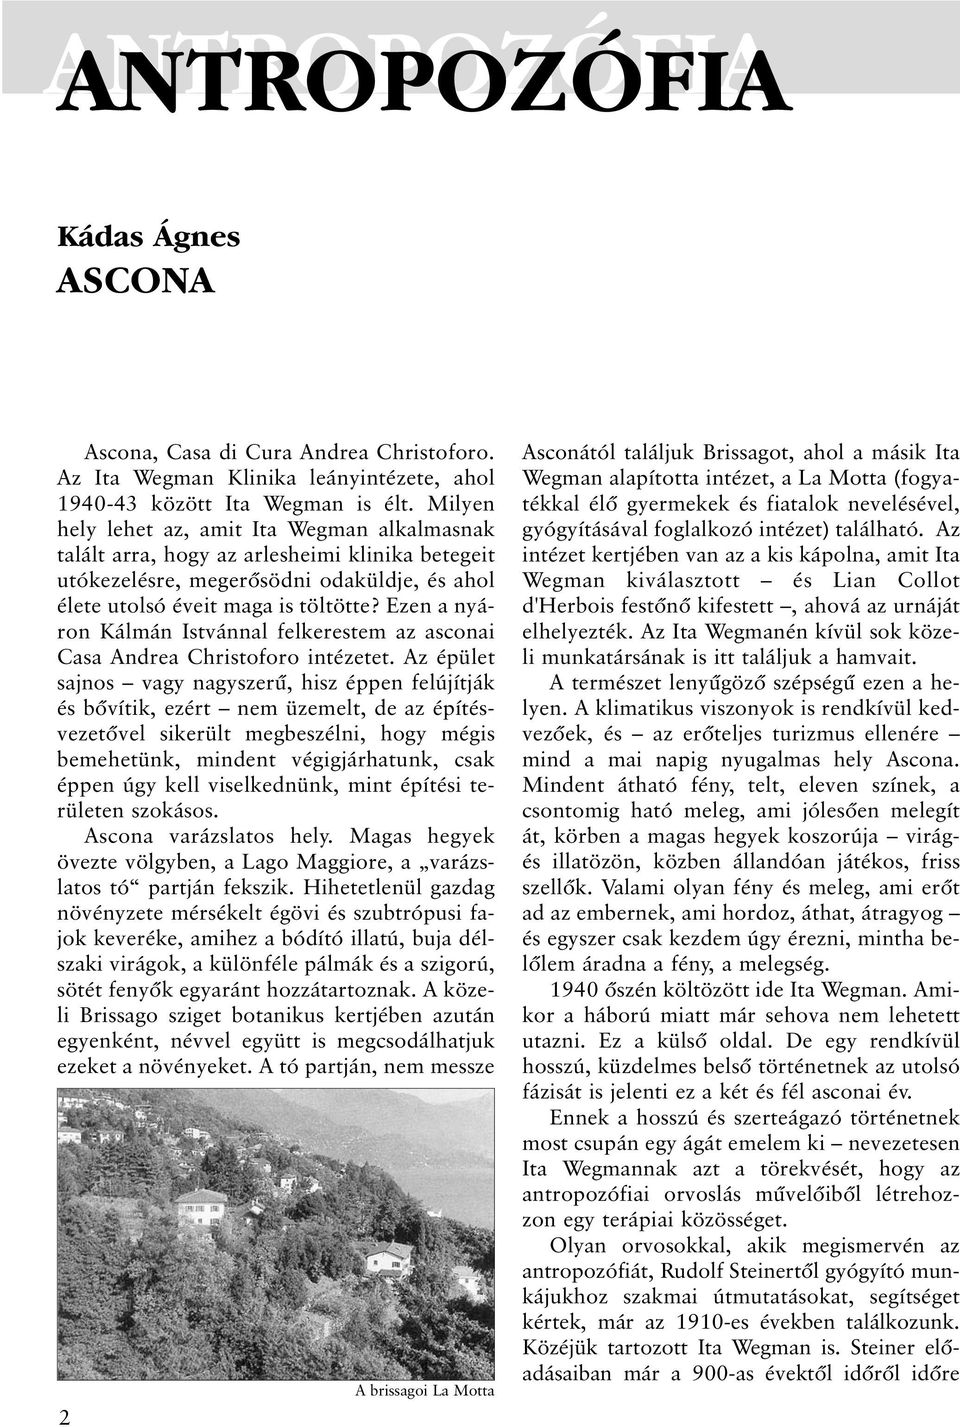 Ezen a nyáron Kálmán Istvánnal felkerestem az asconai Casa Andrea Christoforo intézetet.